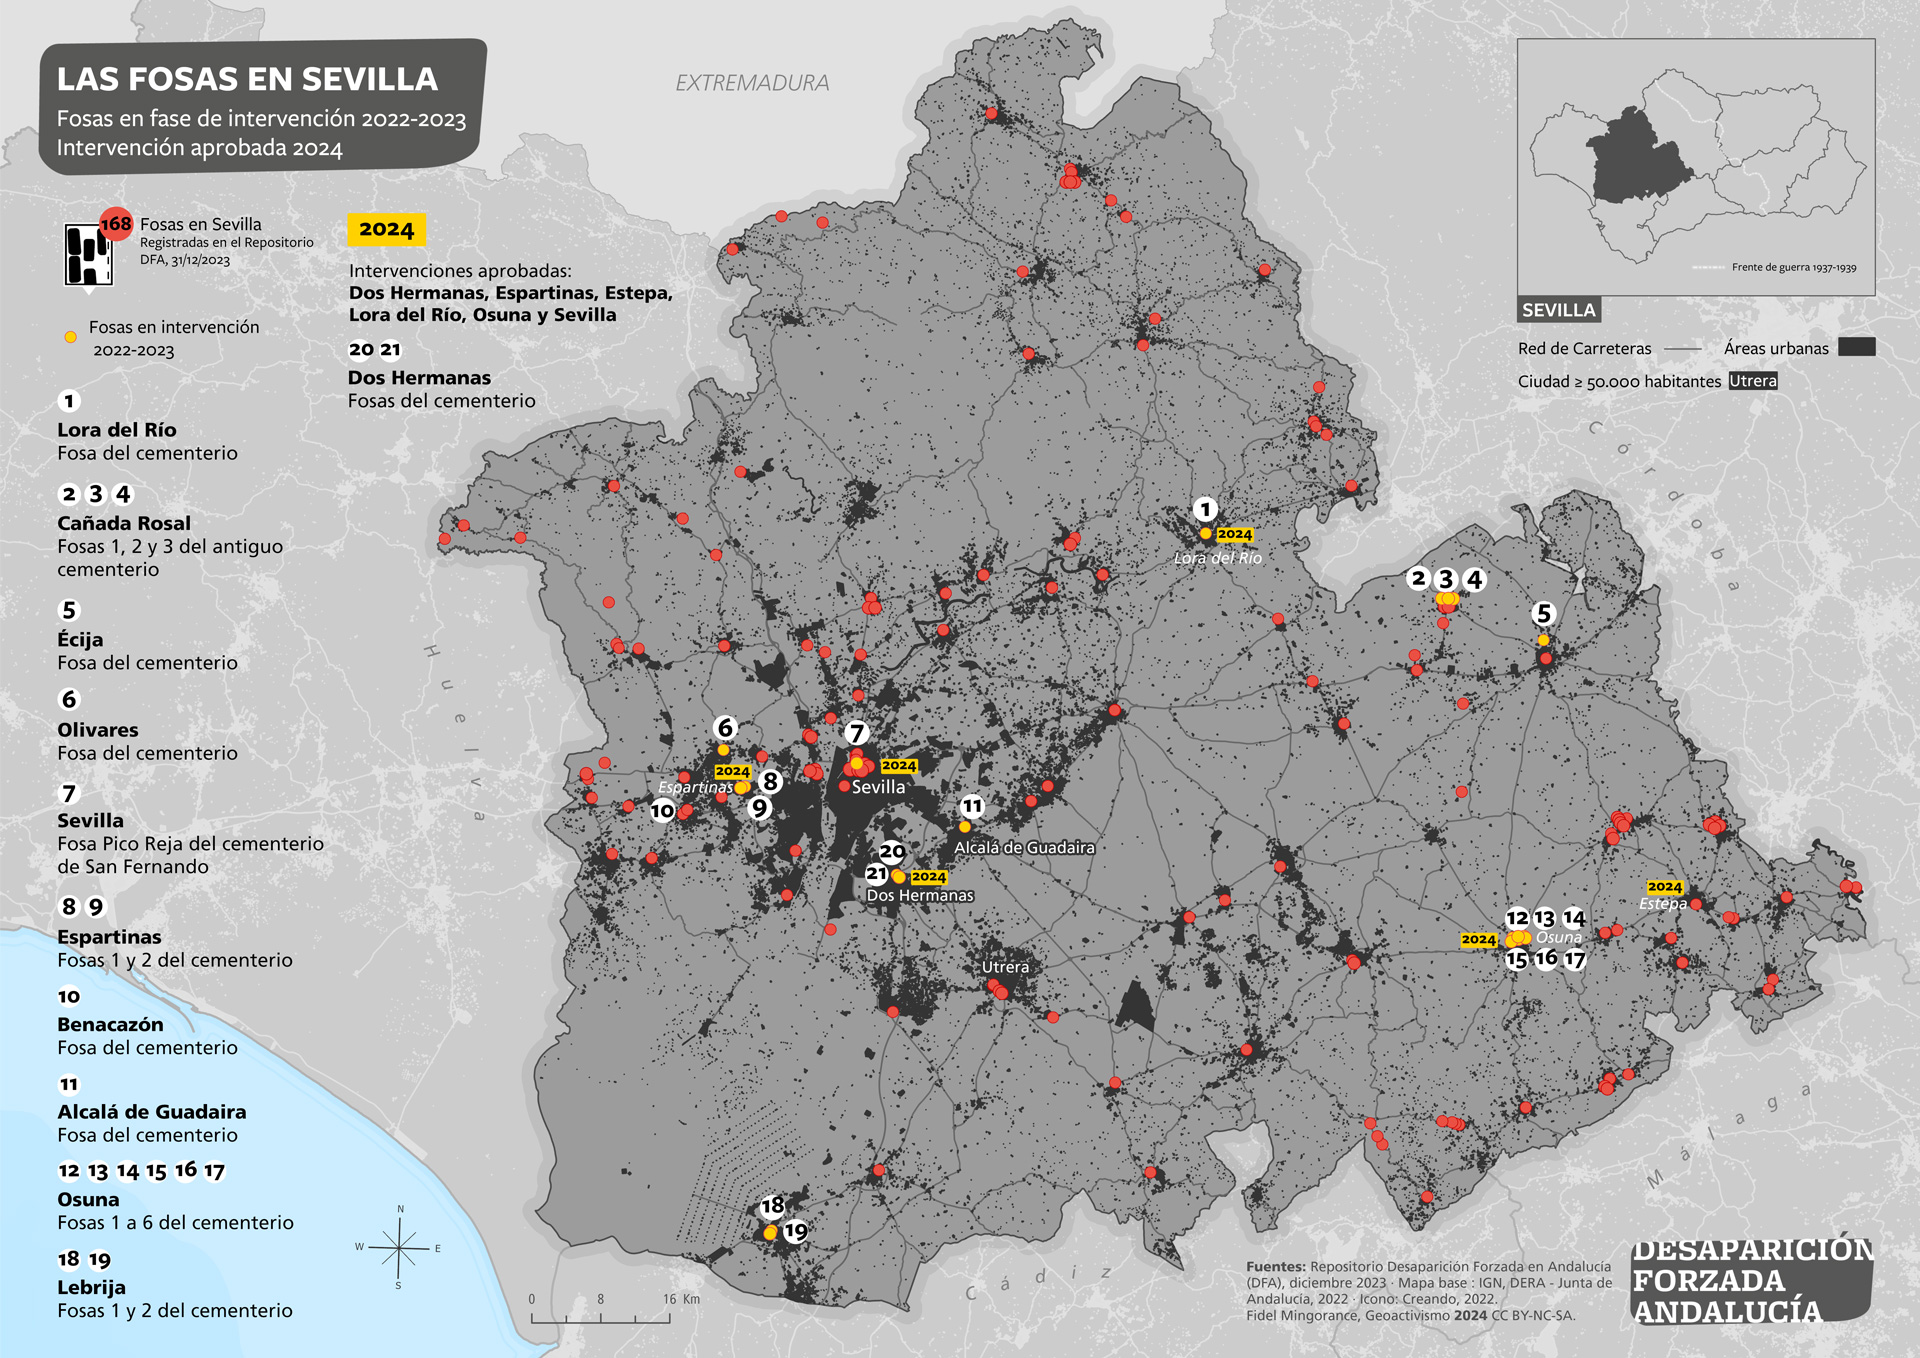 Las fosas en Sevilla. Fosas en fase de intervención en 2022-2023. Intervenciones aprobadas 2024